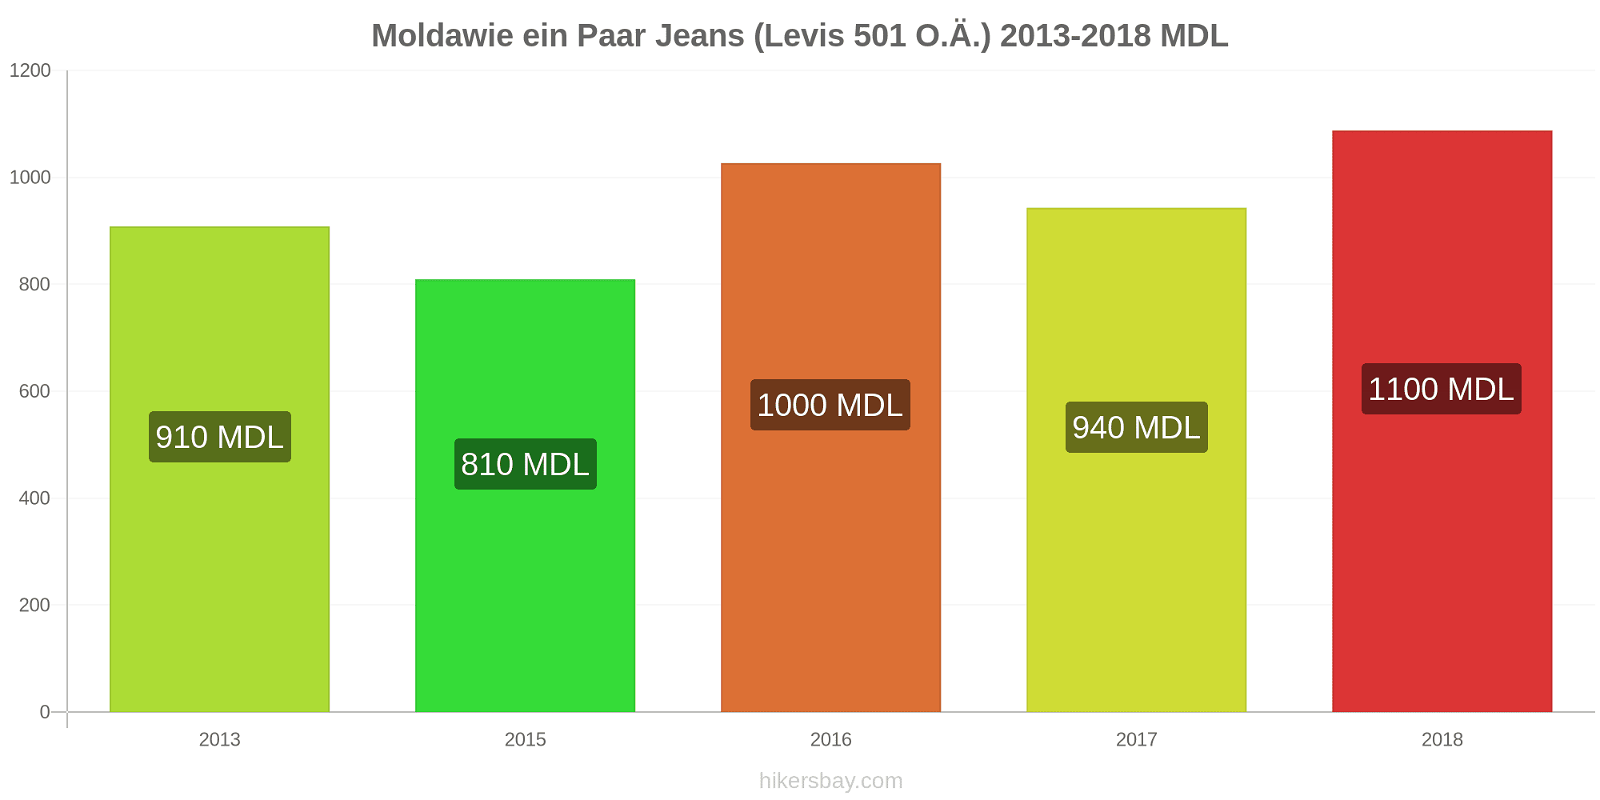 Moldawie Preisänderungen 1 Paar Jeans (Levis 501 oder ähnliche) hikersbay.com